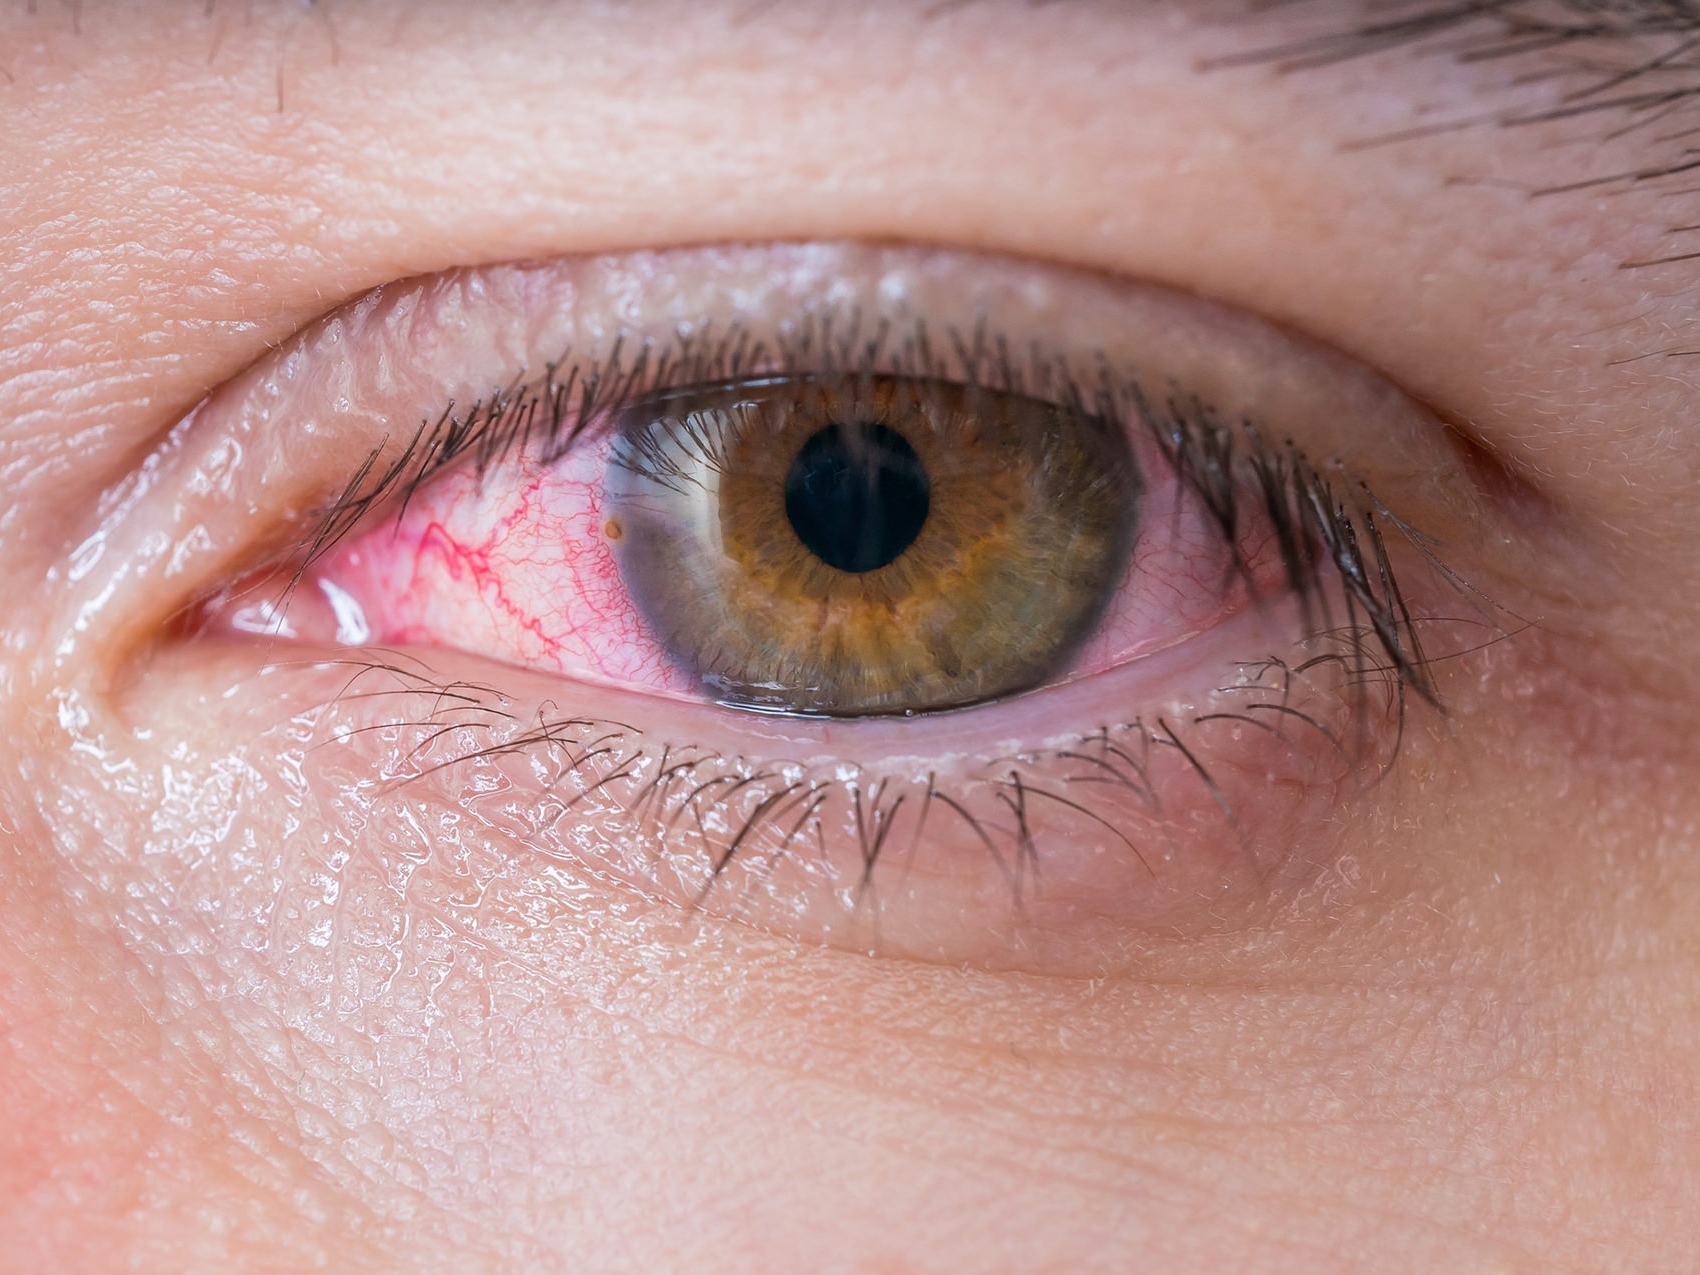 På denna bild visas en närbild av ett ohälsosamt öga som visar hur potentiella ögonrisker kan se ut. 